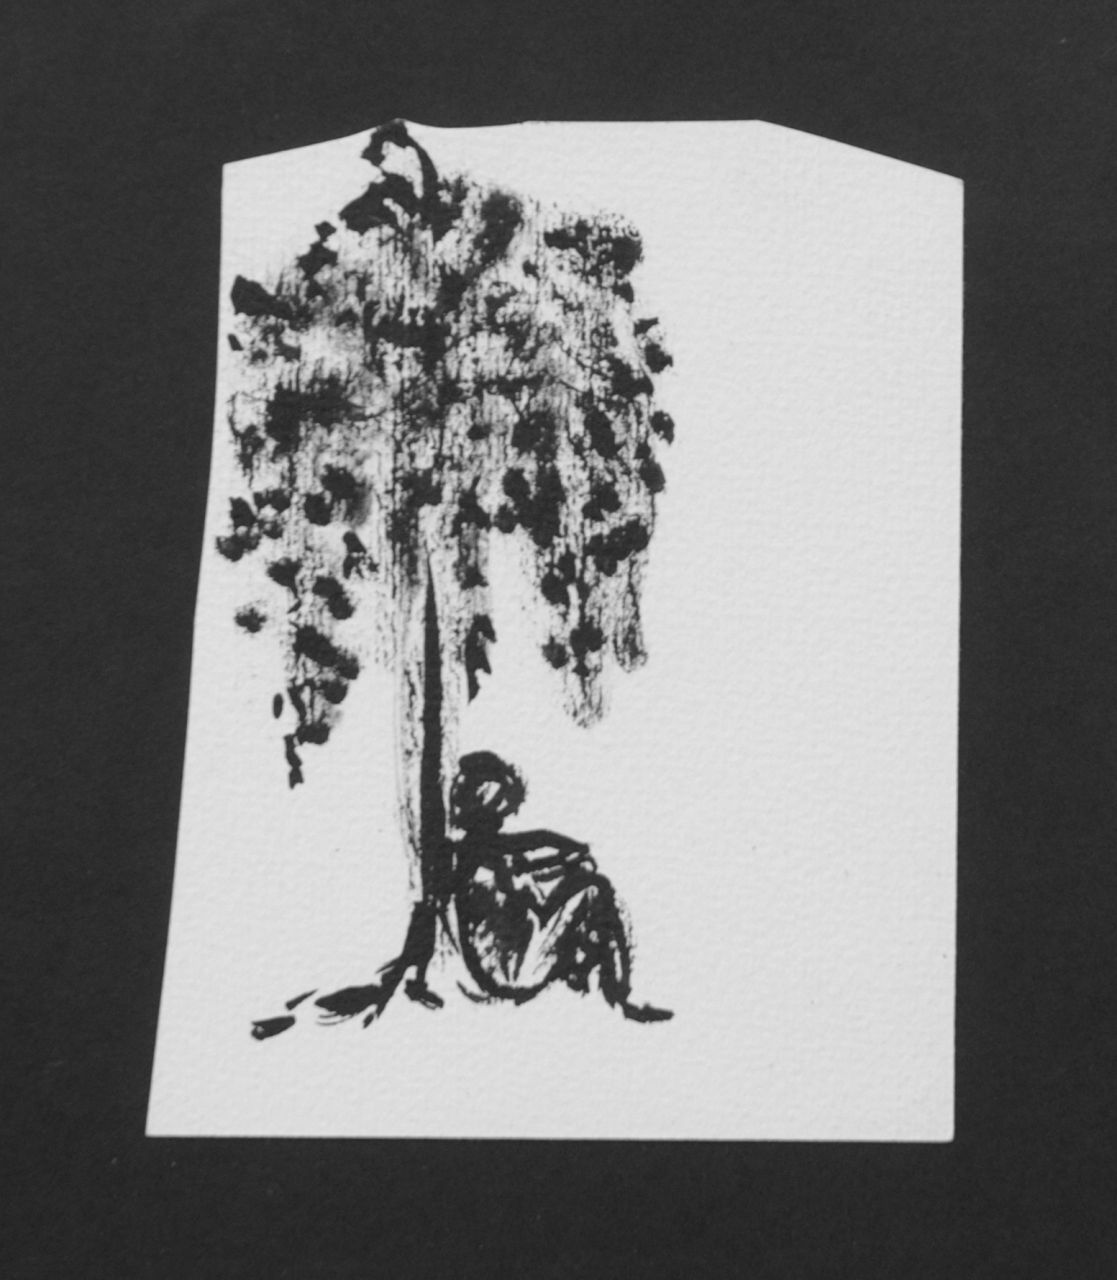 Oranje-Nassau (Prinses Beatrix) B.W.A. van | Beatrix Wilhelmina Armgard van Oranje-Nassau (Prinses Beatrix), Man sleepig under a tree, Bleistift und Ausziehtusche auf Papier 12,2 x 9,7 cm, executed August 1960